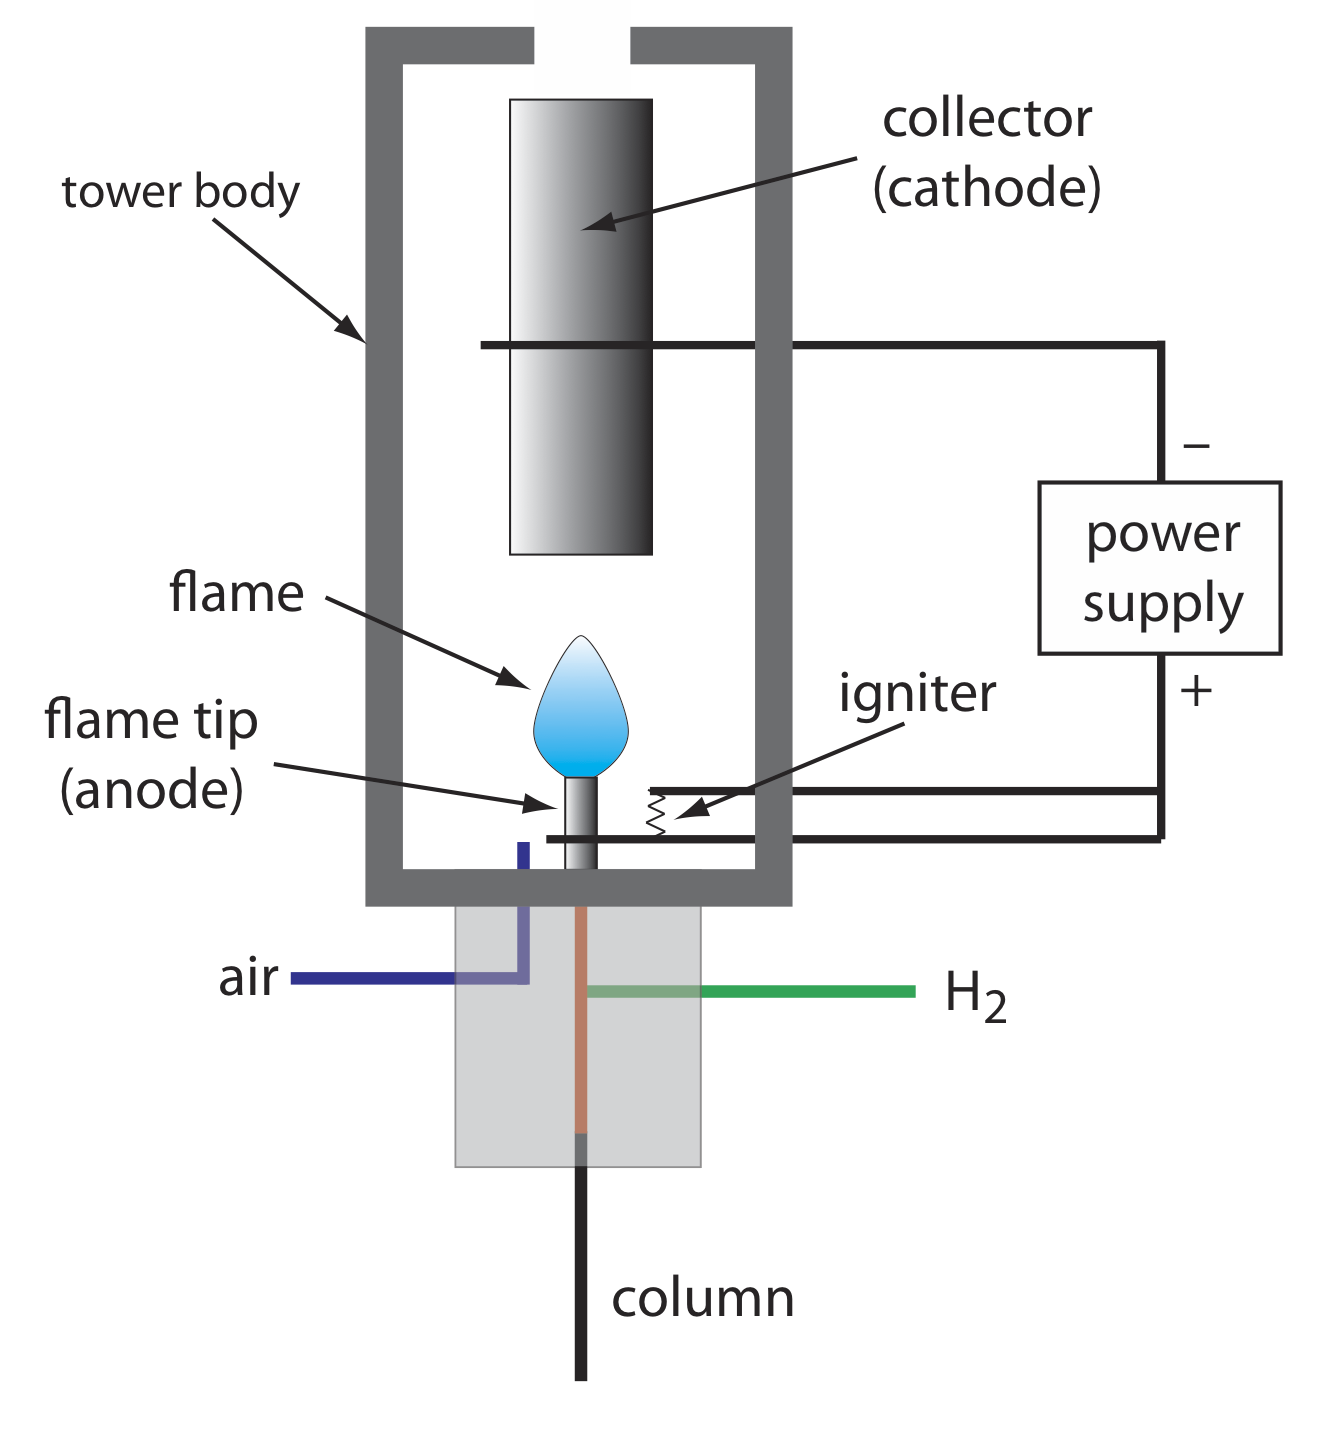 El detector de ionización de llama consiste en una columna, línea H2, línea de aire, punta de llama (ánodo), ignición, llama, fuente de alimentación, cuerpo de torre y colector (cátodo).